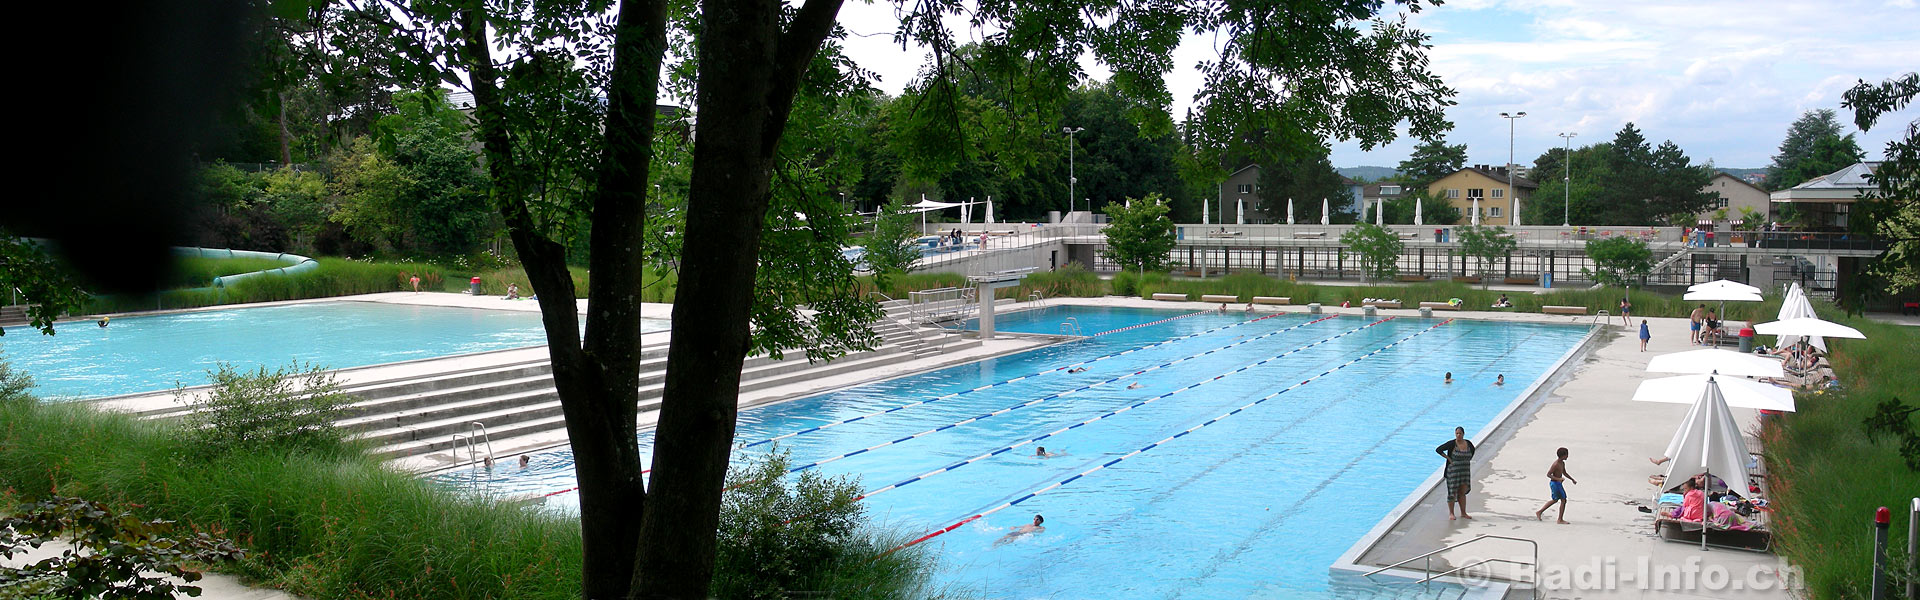 Schwimmbad Zürich-Heuried